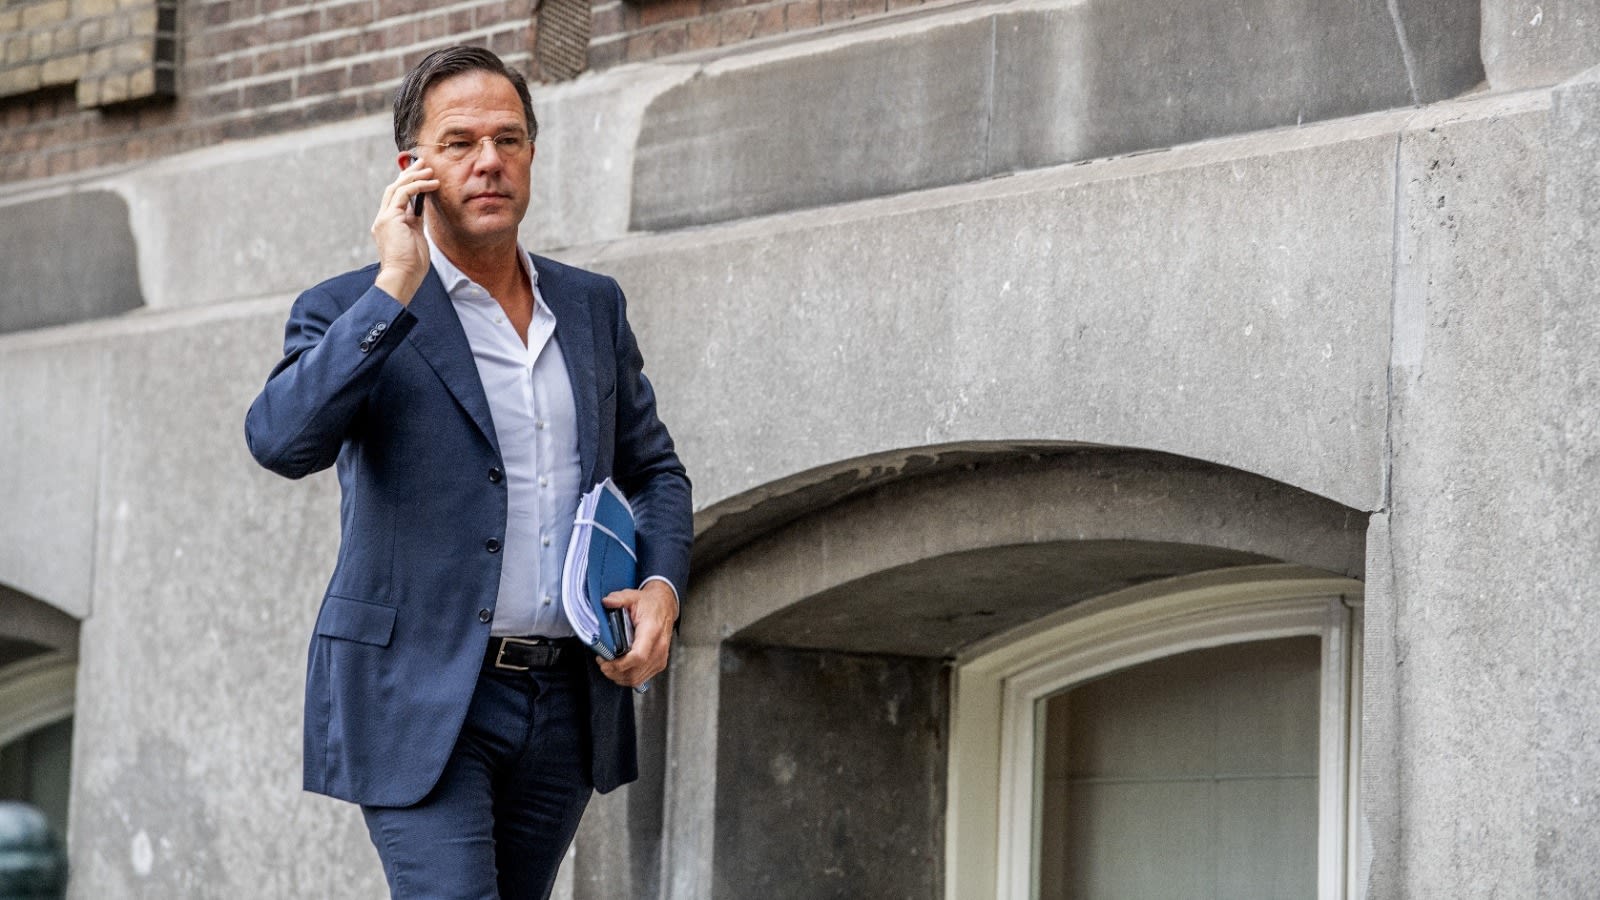 'Premier Rutte wiste jarenlang iedere dag berichten op werktelefoon'